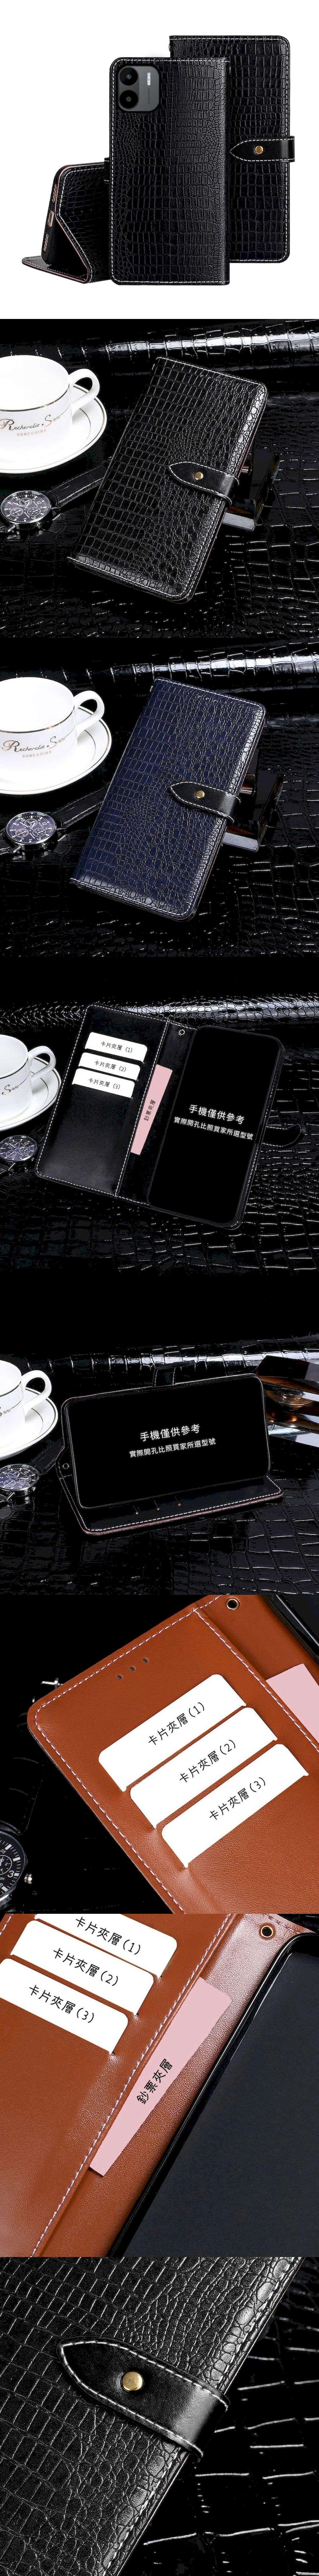 紅米 Note10 5G 皮革保護套(BUCKLE) - 鱷魚紋磁扣帶左右翻蓋皮套手機套